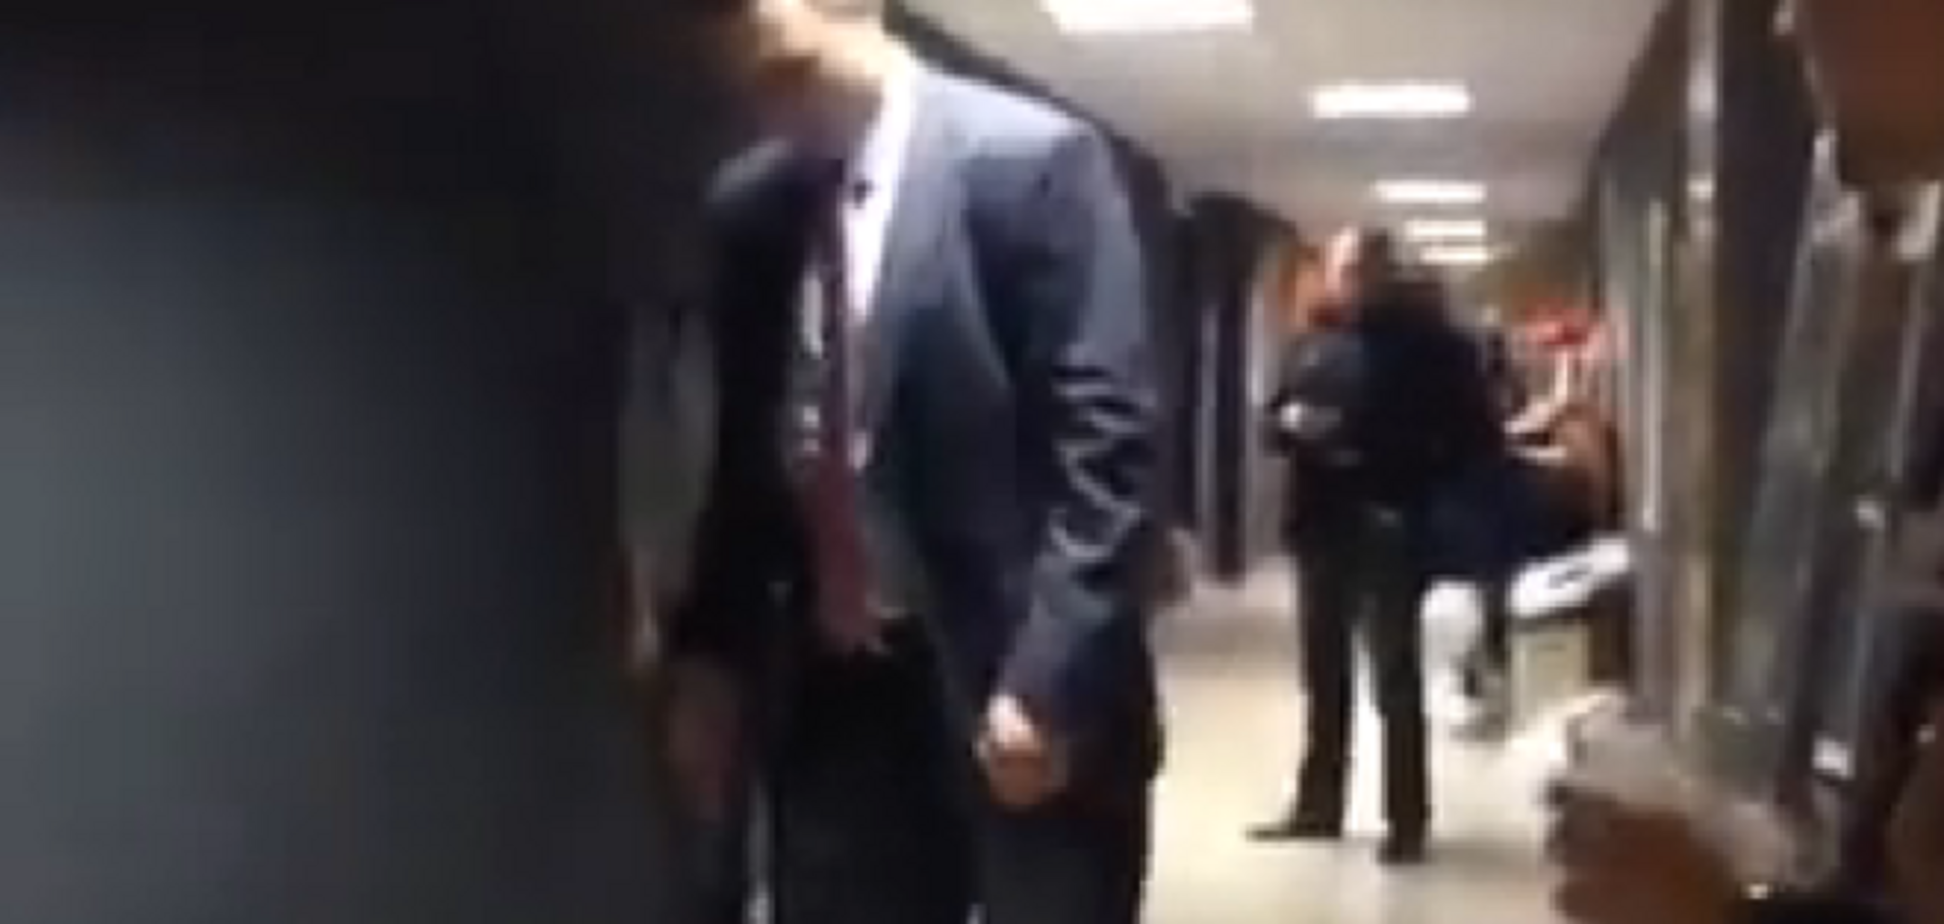 Появилось видео с Кличко, катающемся на скейтборде в коридоре